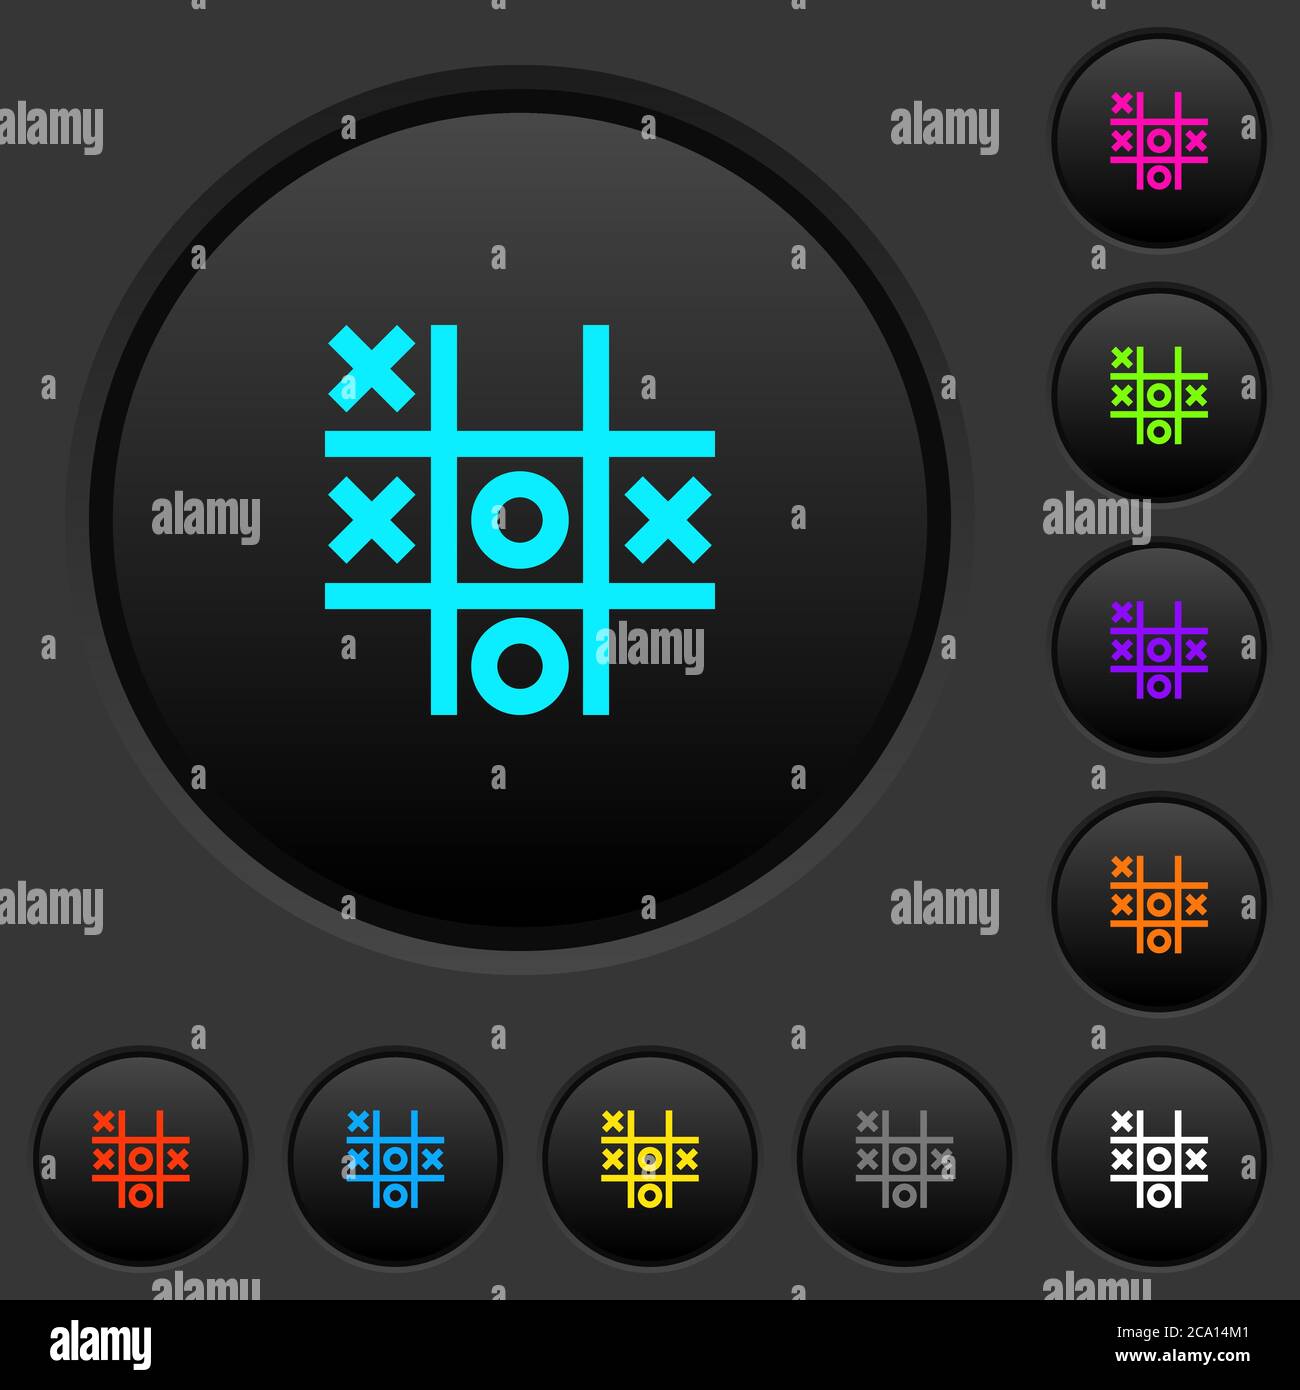 TIC tac toe juego botones pulsadores oscuros con iconos de colores